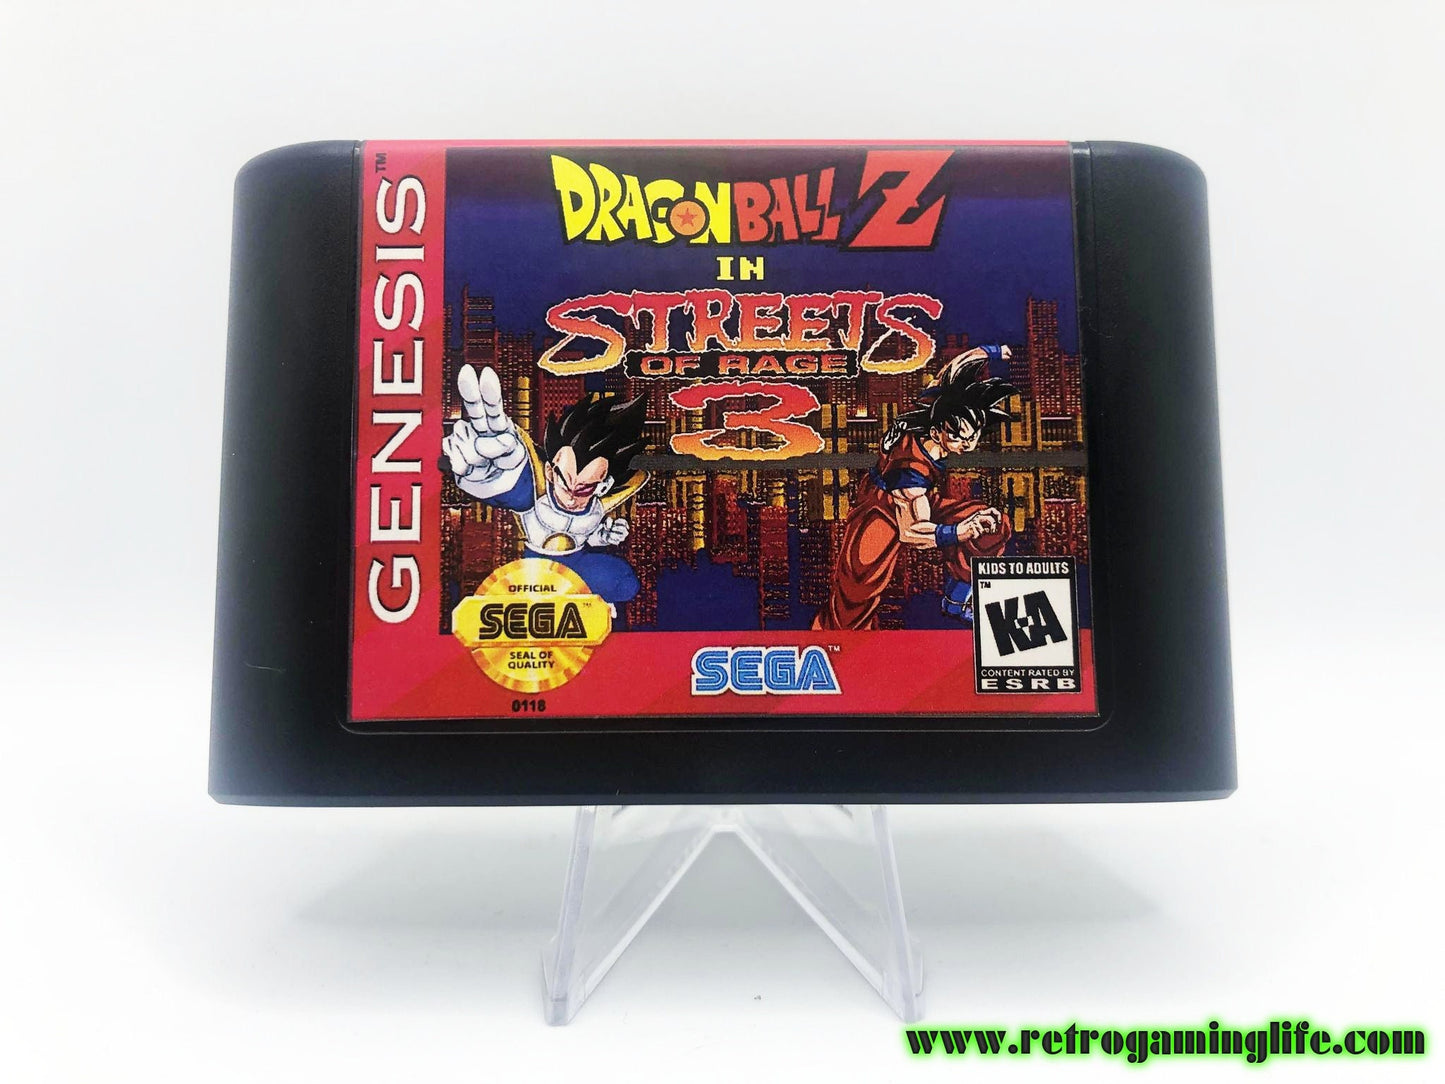 Dragon Ball Z in Streets of Rage 3 Sega Genesis Cart Game Beat 'em Up